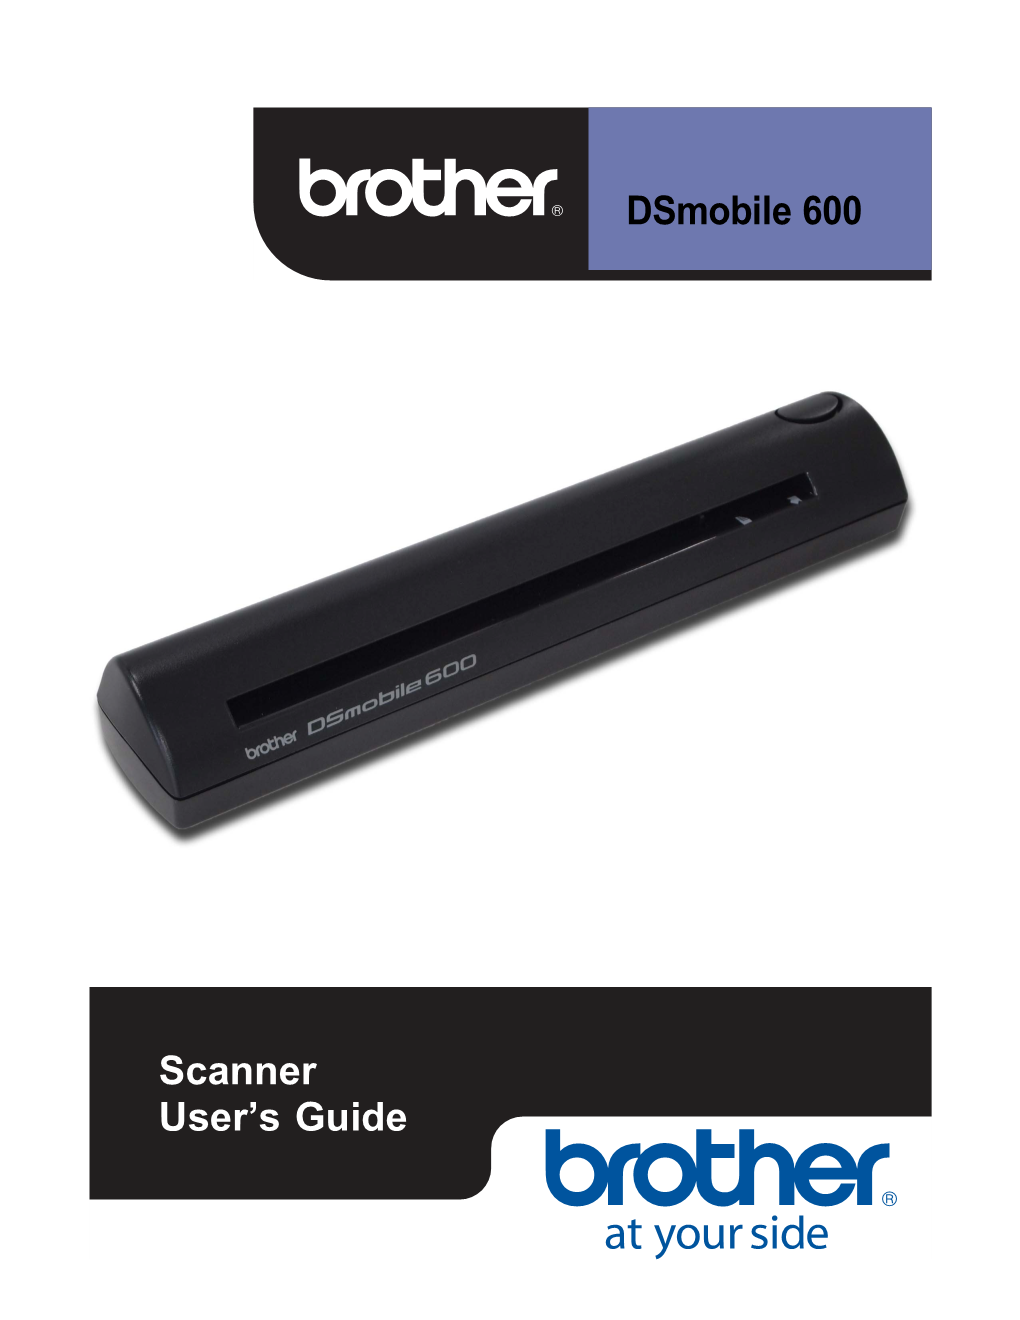 Dsmobile 600 Scanner User's Guide